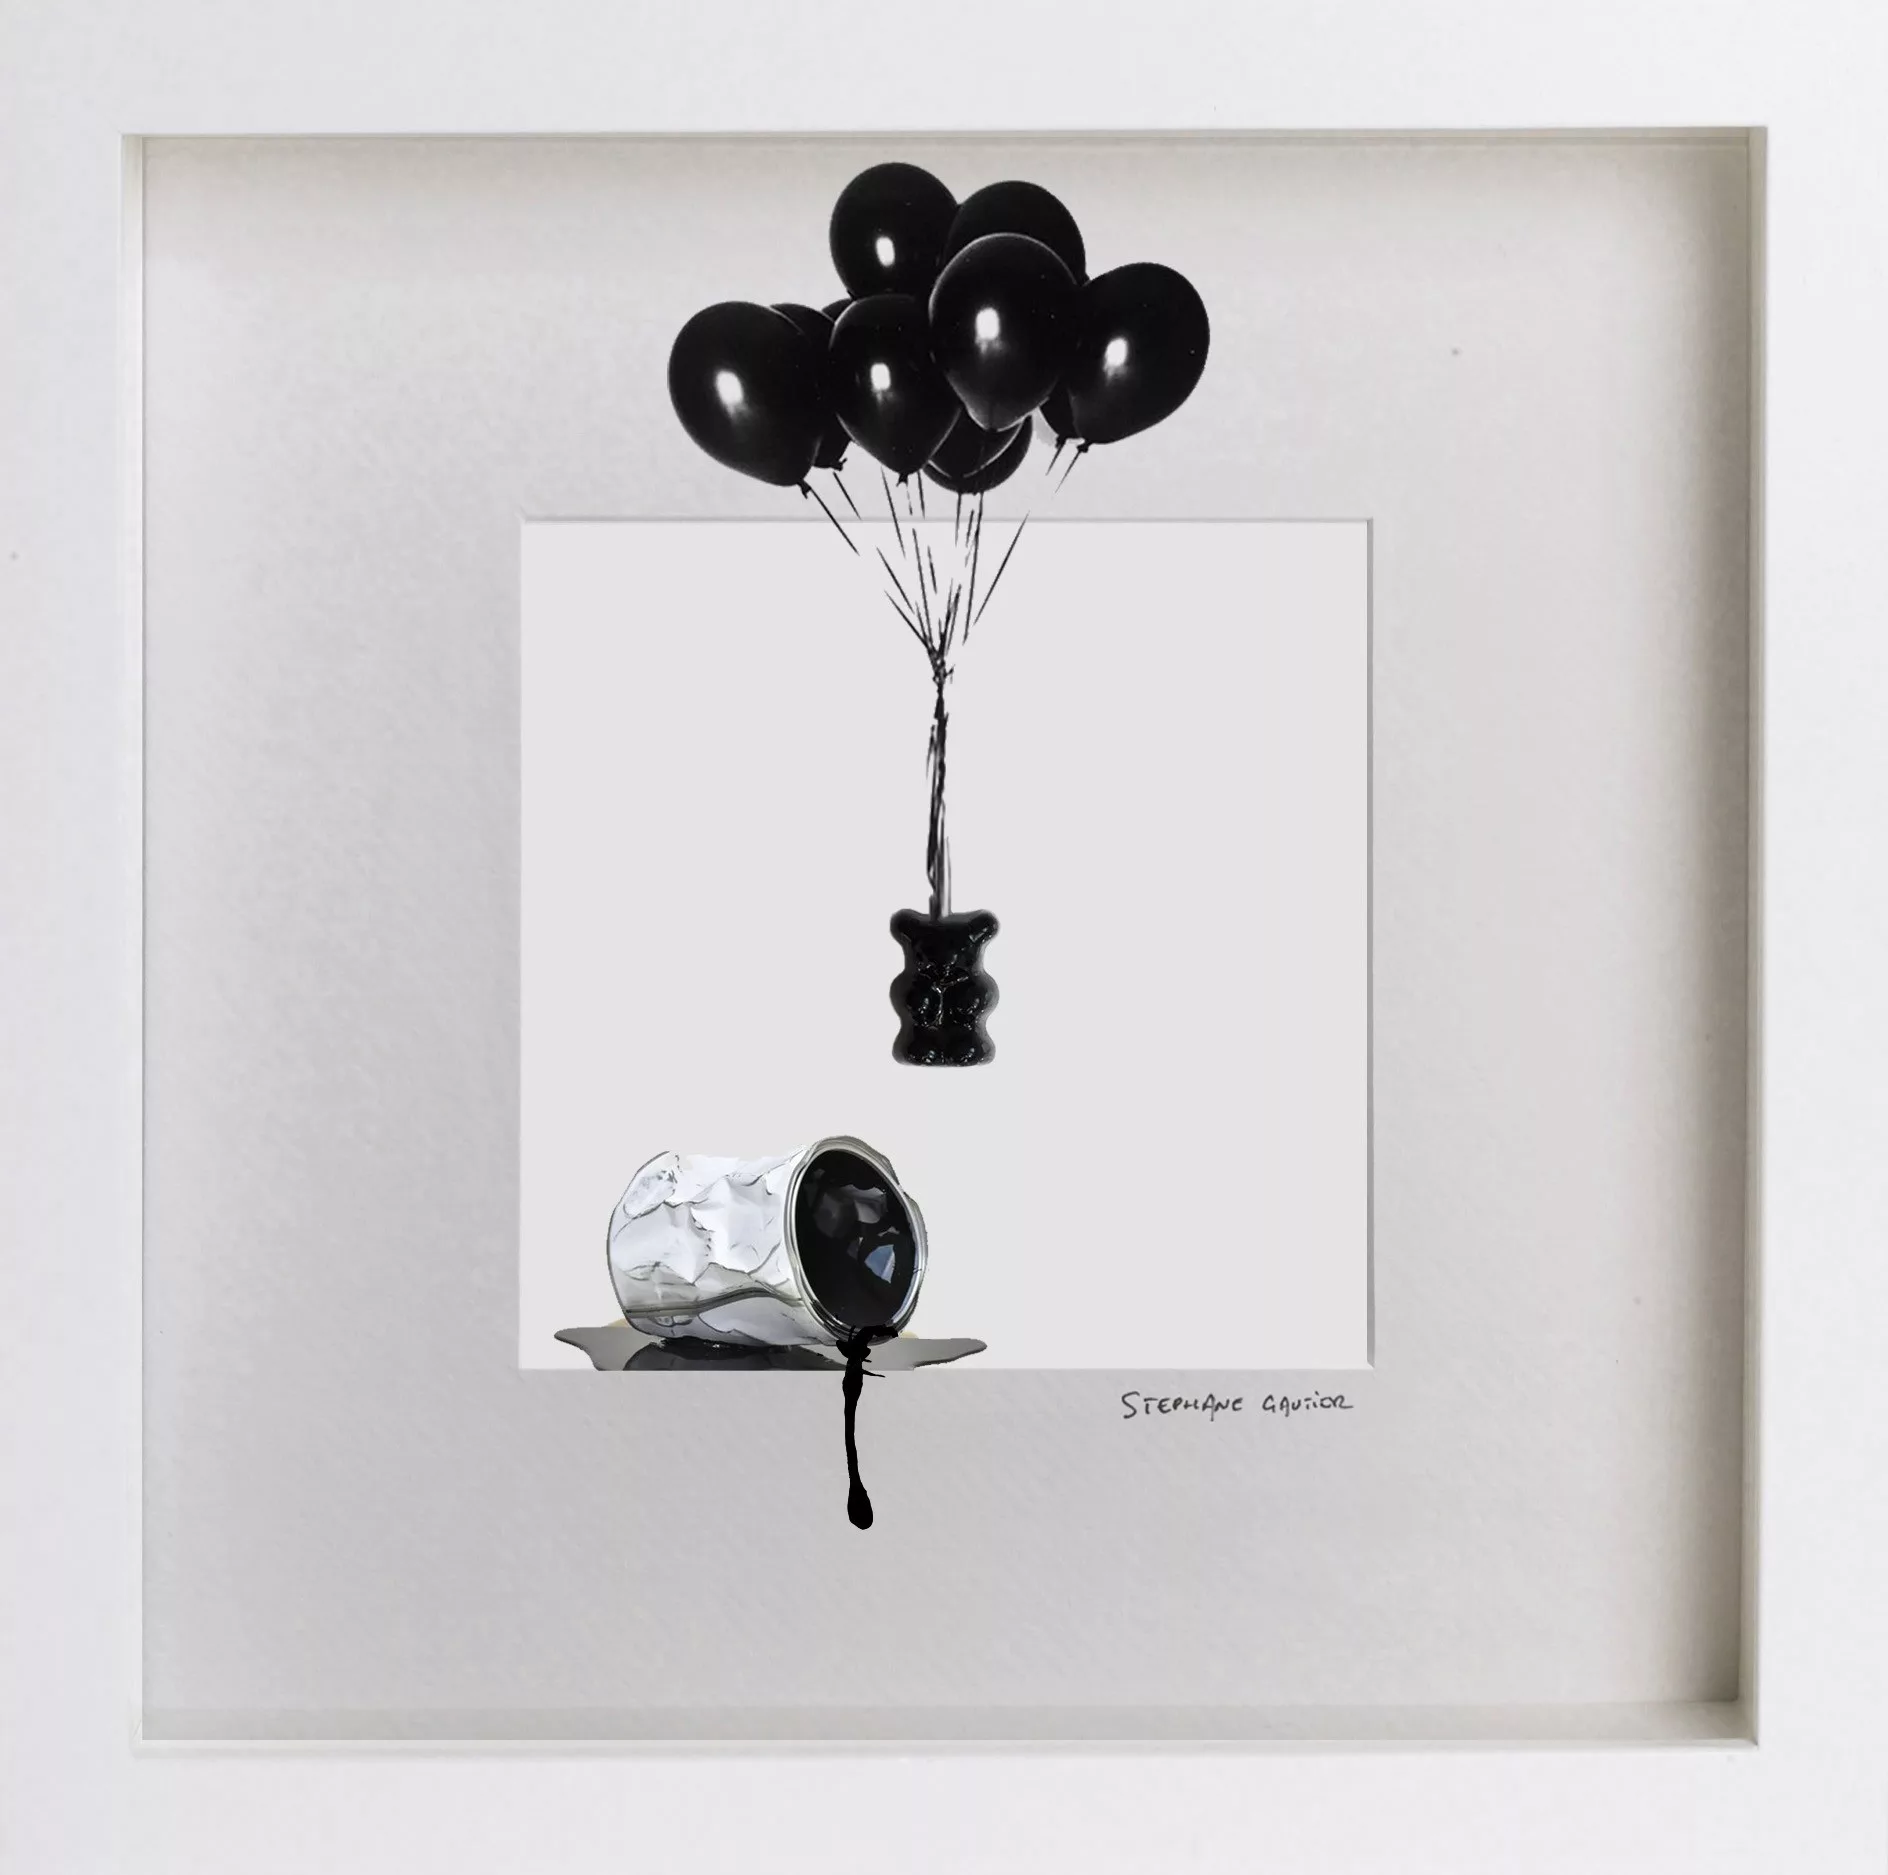 Mini collector Black Balloon, Stéphane Gautier, mixed media, 27x27cm, singular original piece